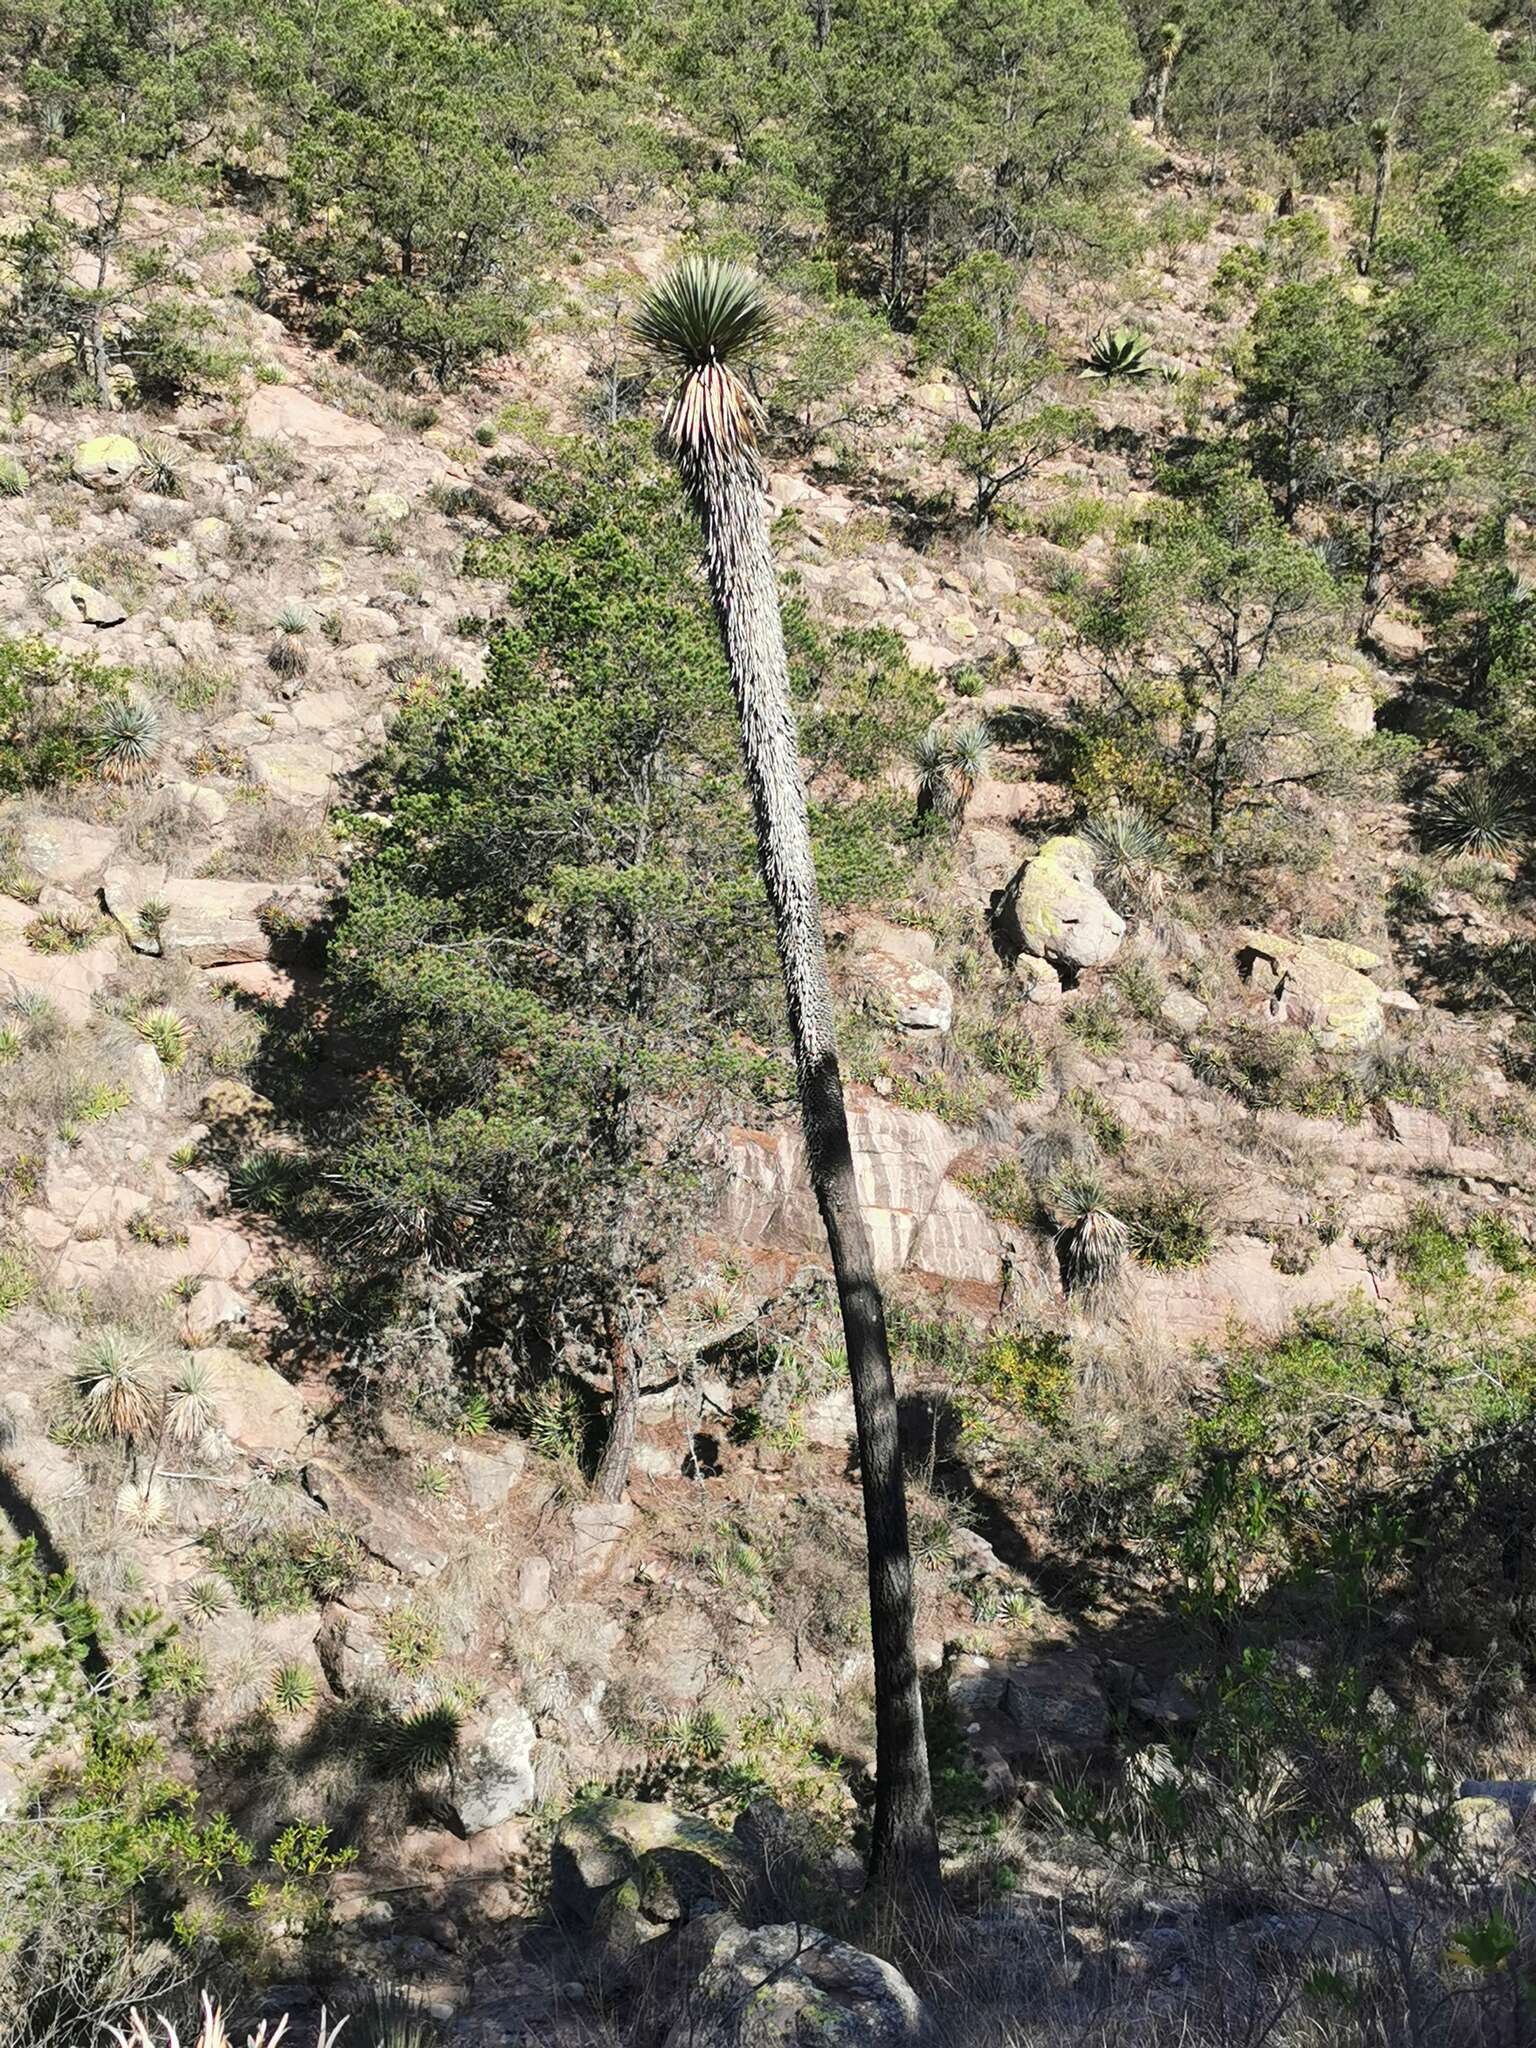 Image of Yucca decipiens Trel.